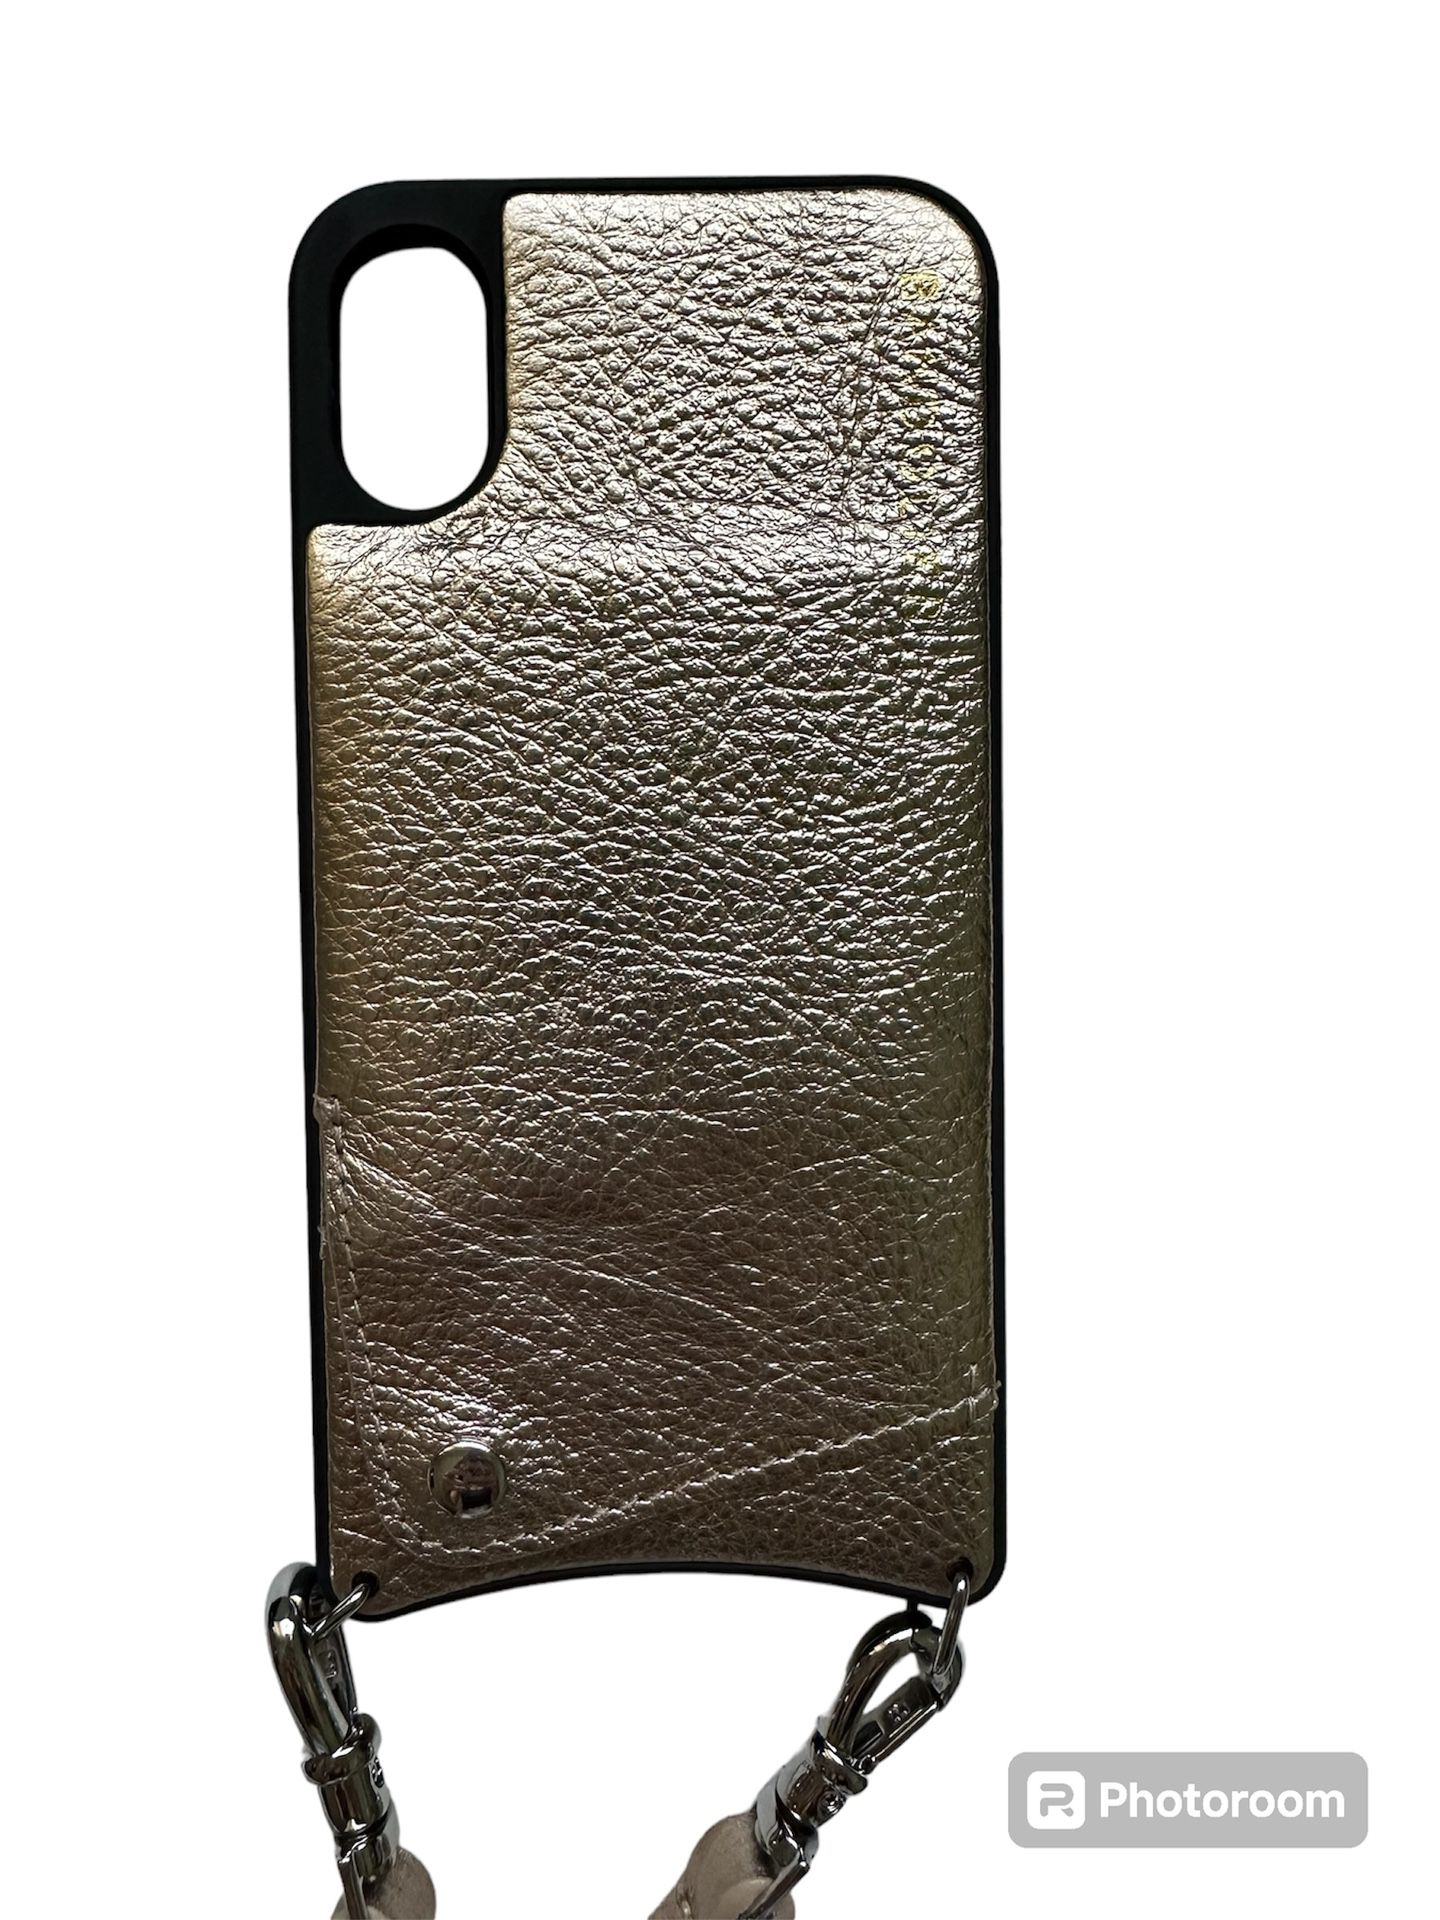 Bandolier Iphone Case Wallet Crossbody 